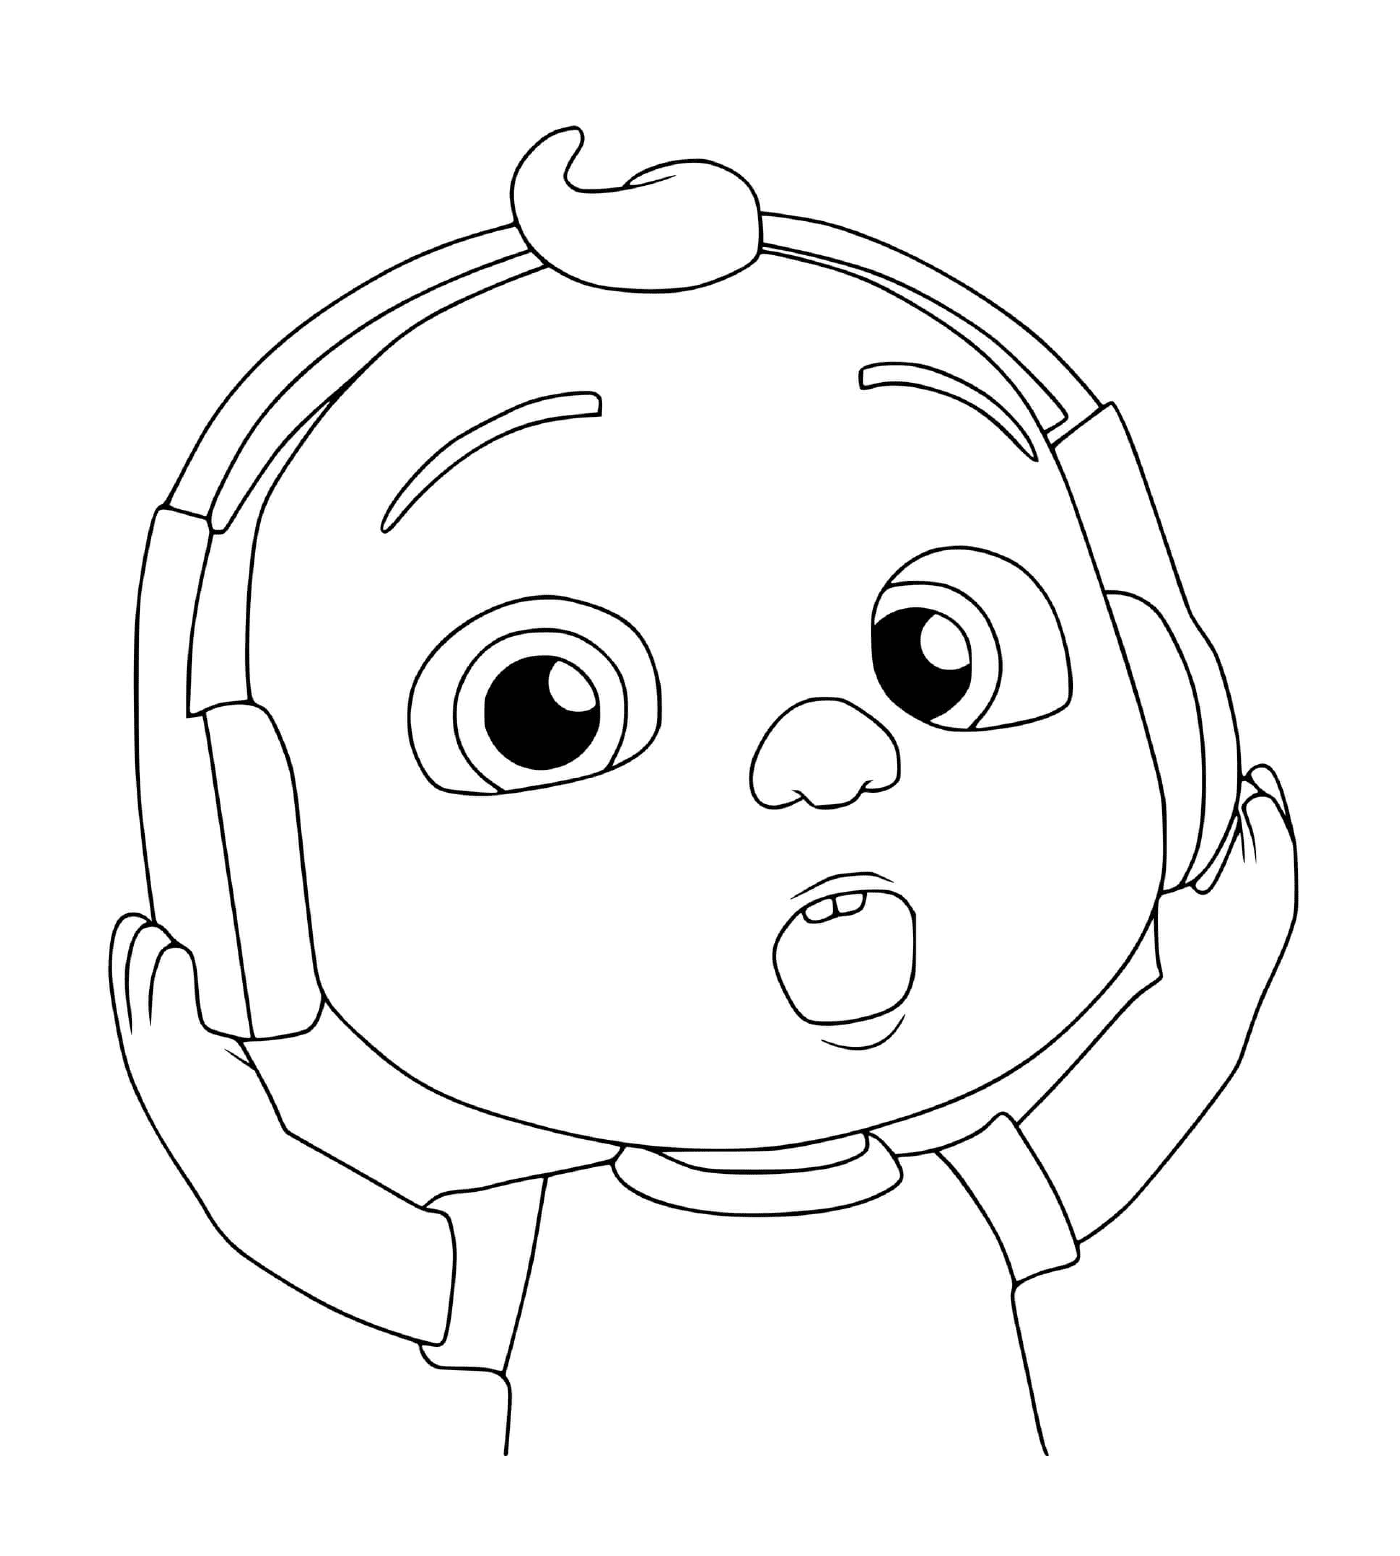  कोलोन का बच्चा संगीत सुनता है 